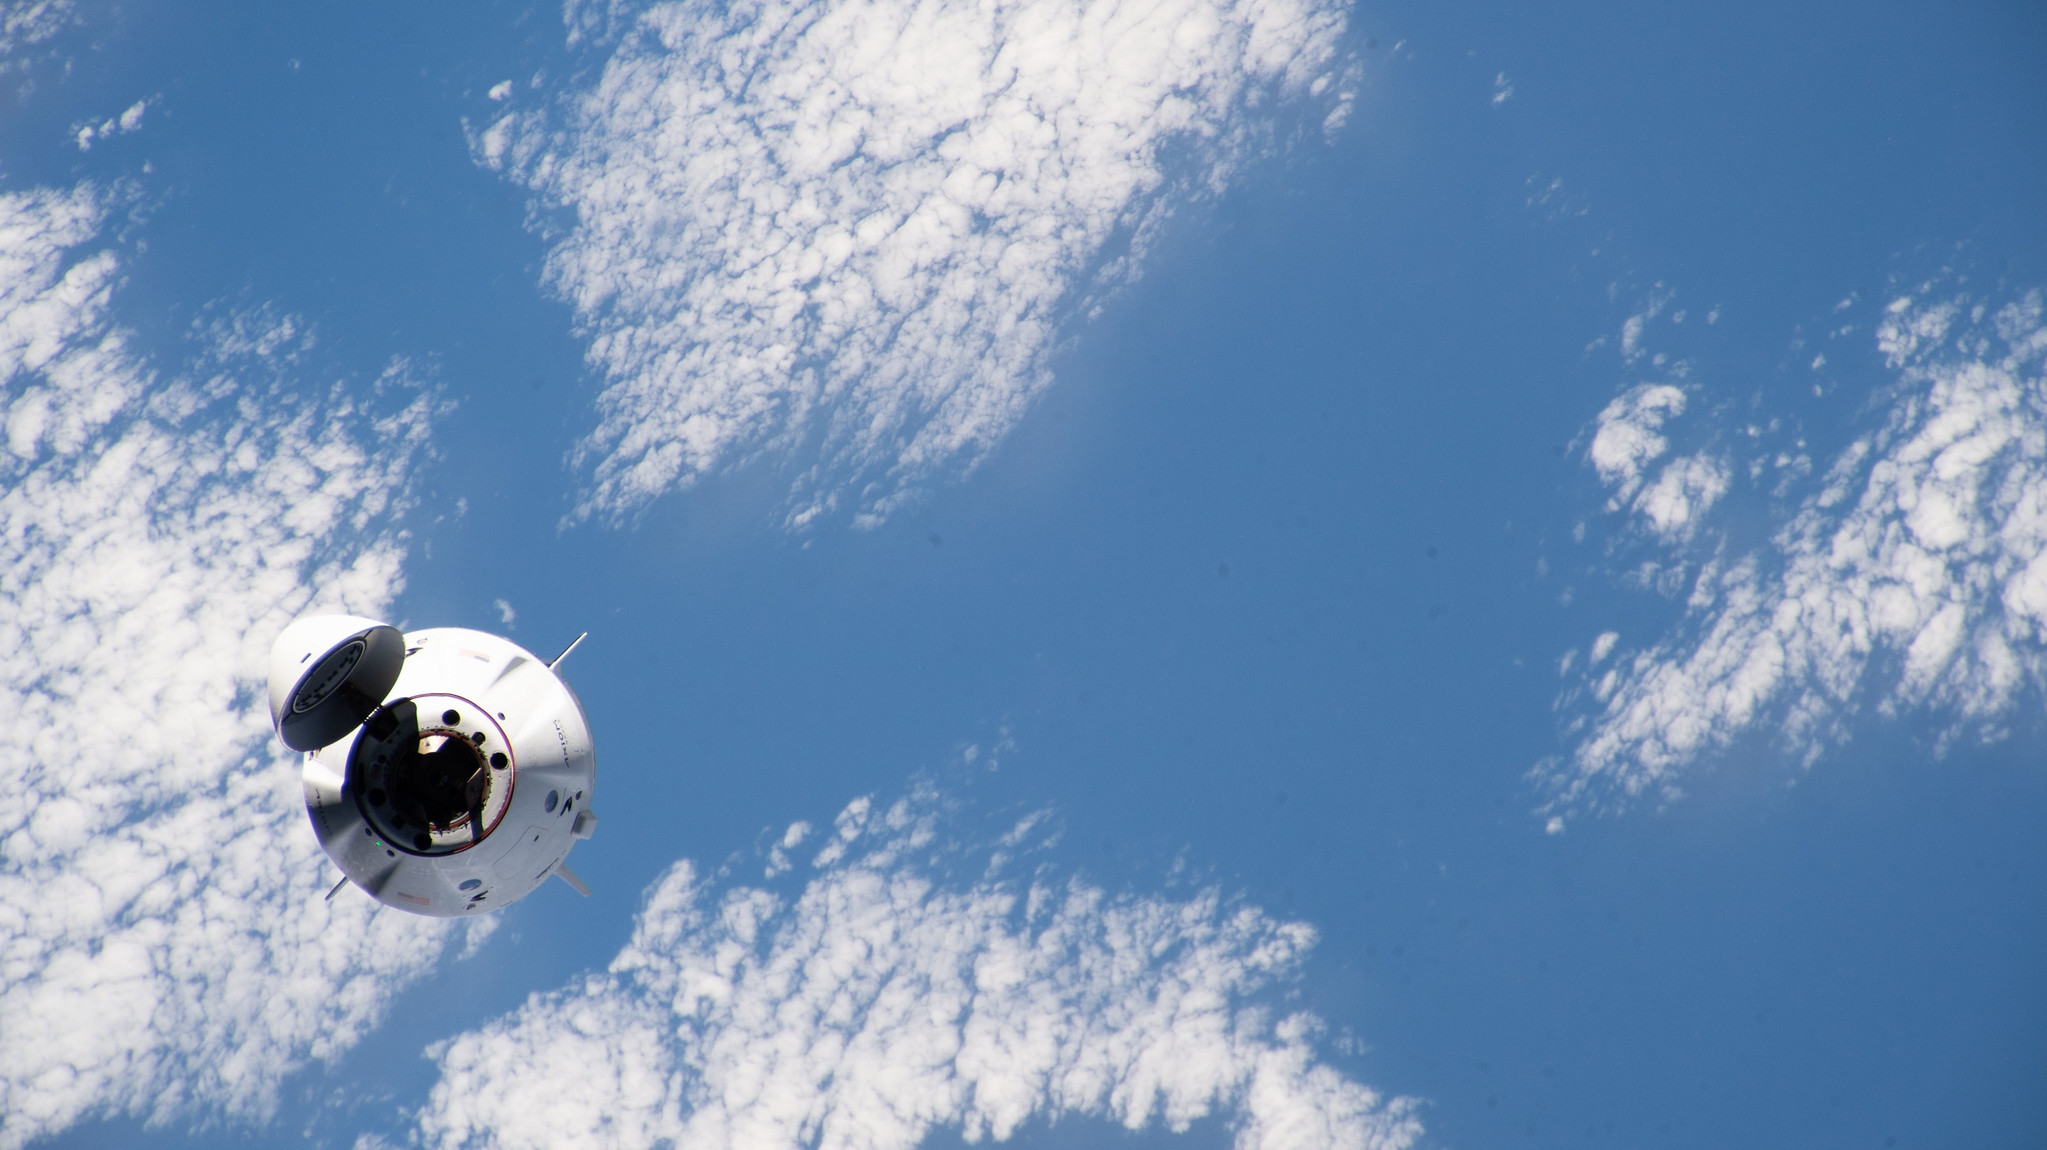 Crew Dragon Endeavour — космический корабль Crew Dragon, производимый и эксплуатируемый компанией SpaceX и используемый в рамках коммерческой программы НАСА. Фото © Flickr.com / NASA Johnson